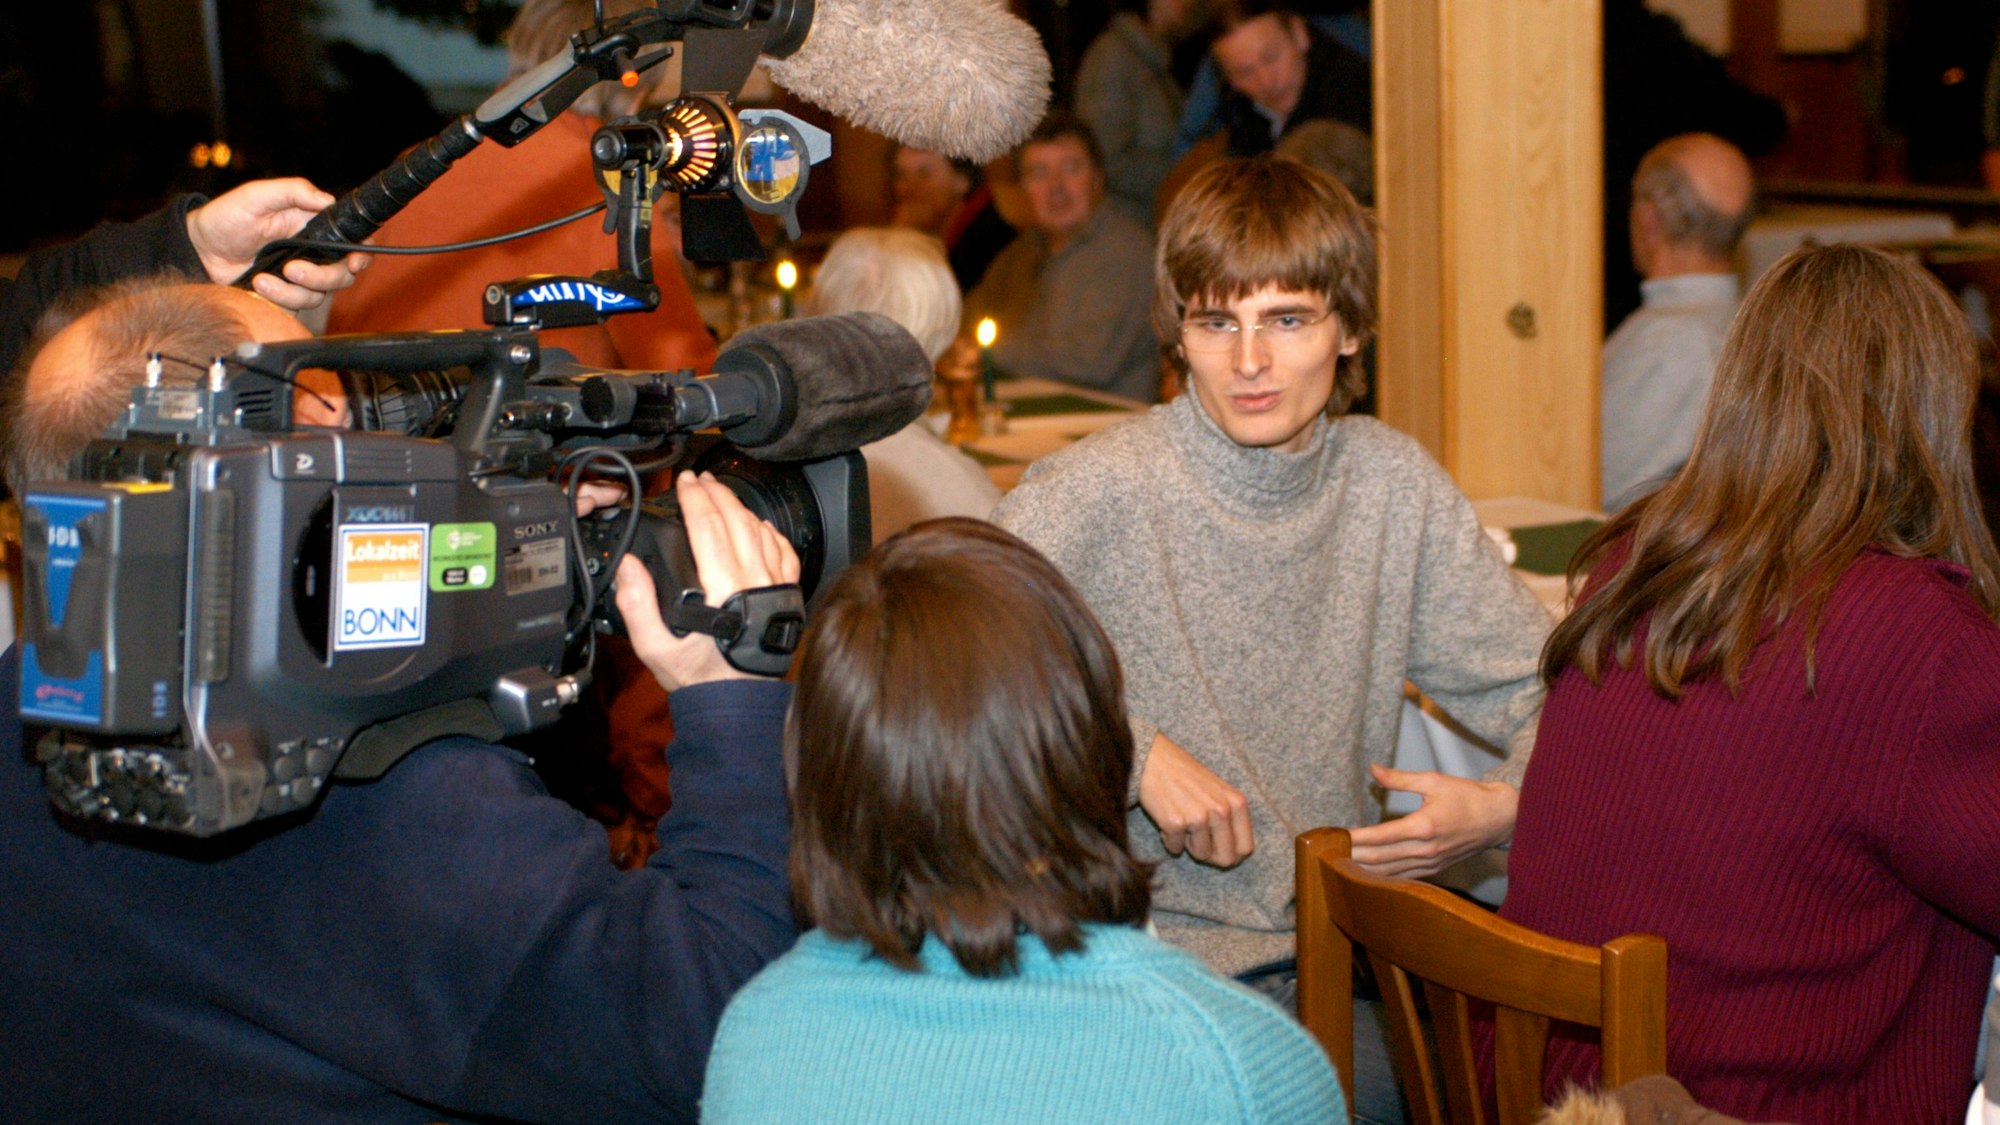 In einer Versammlung sitzt der damals 24-jährige Arvid Bell auf einem Stuhl. Ein Fernsehteam mit Kamera und Mikrofon nimmt ihn für ein Porträt auf.